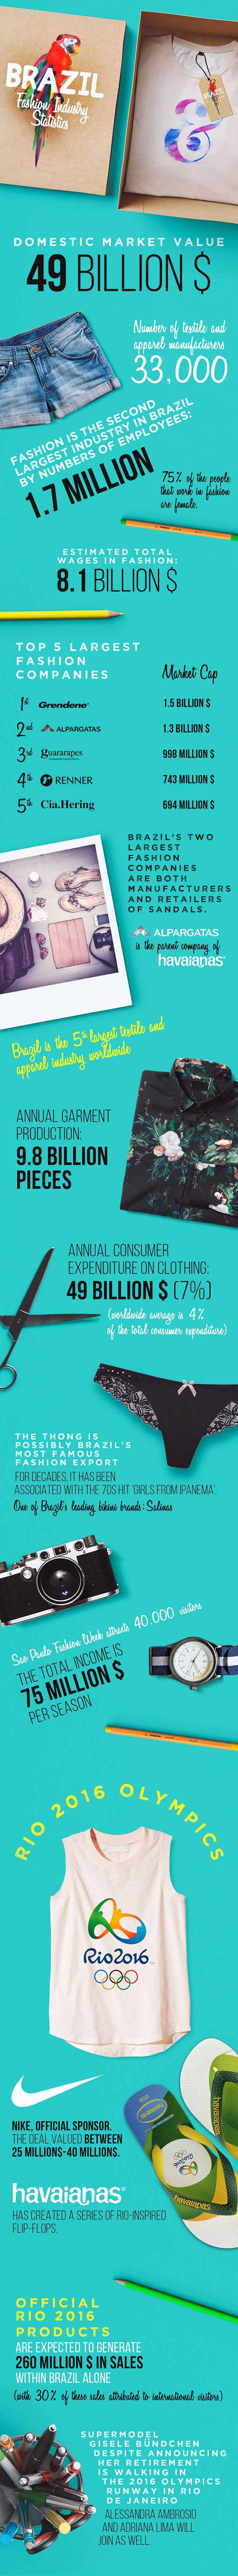 Statistiche sull'industria della moda parte 3: Brasile